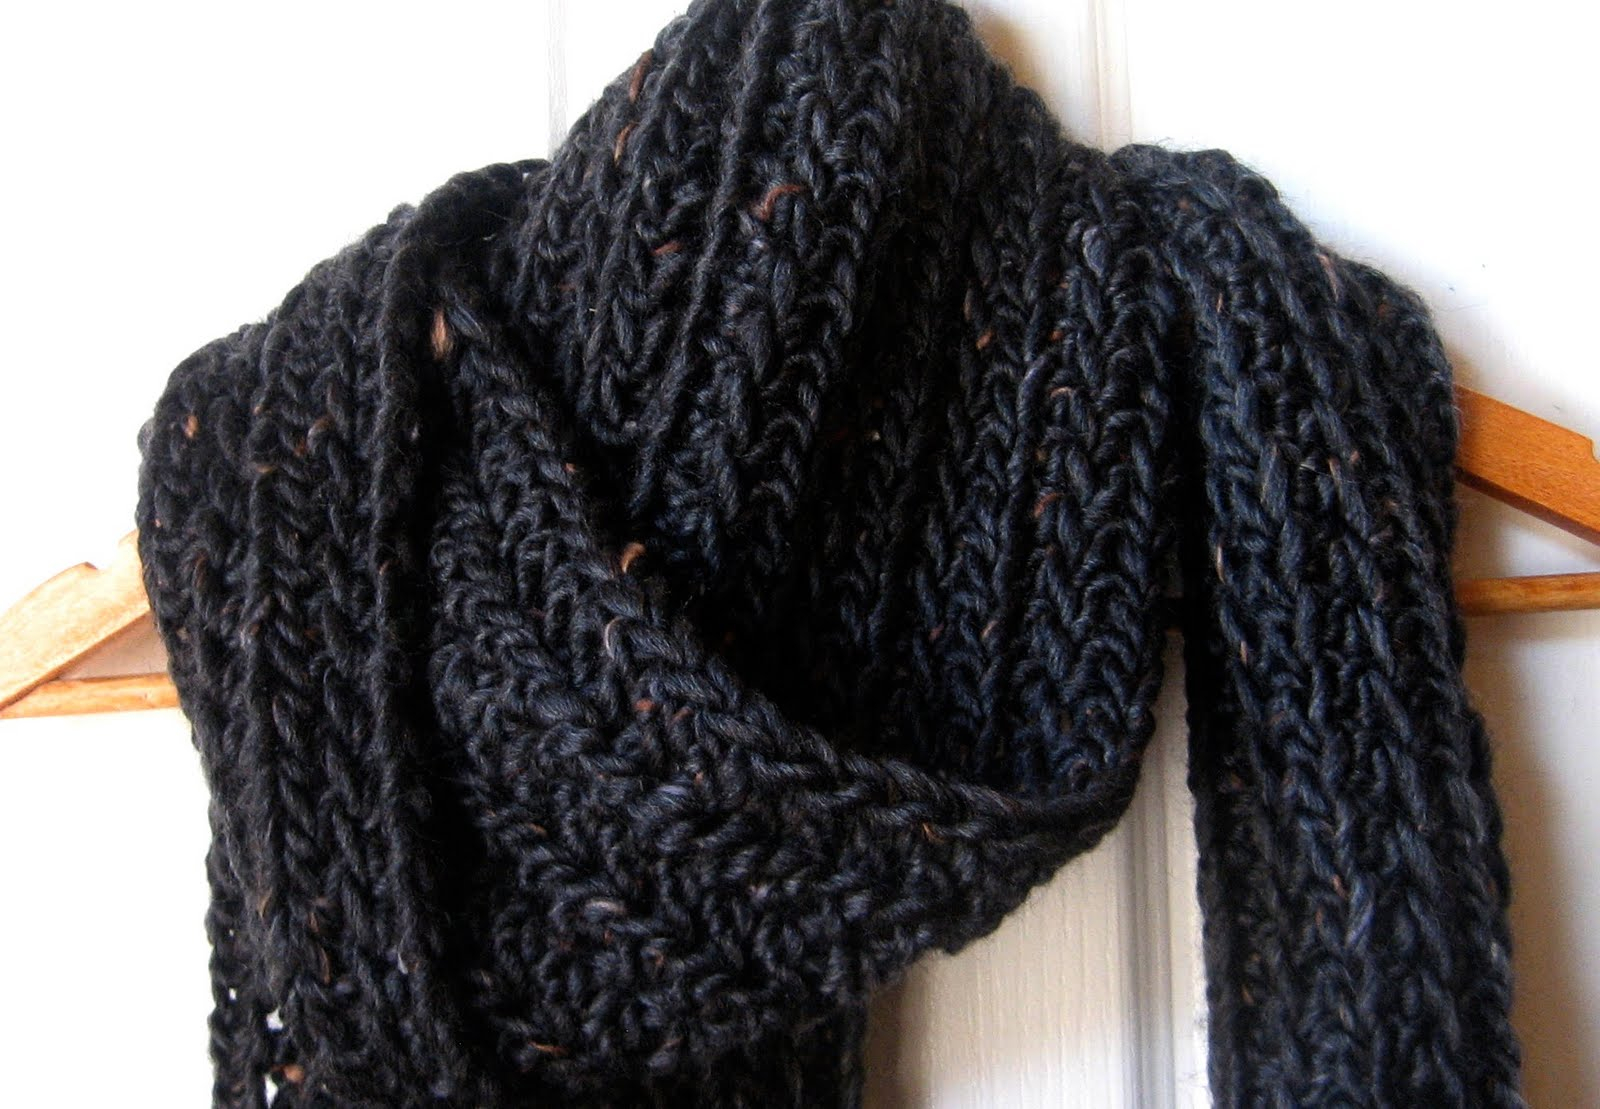 Easy Scarf Knitting Patterns For Men 22 Crocheted Scarves For Men Anchor Scarf For Men Navy Blue Crochet